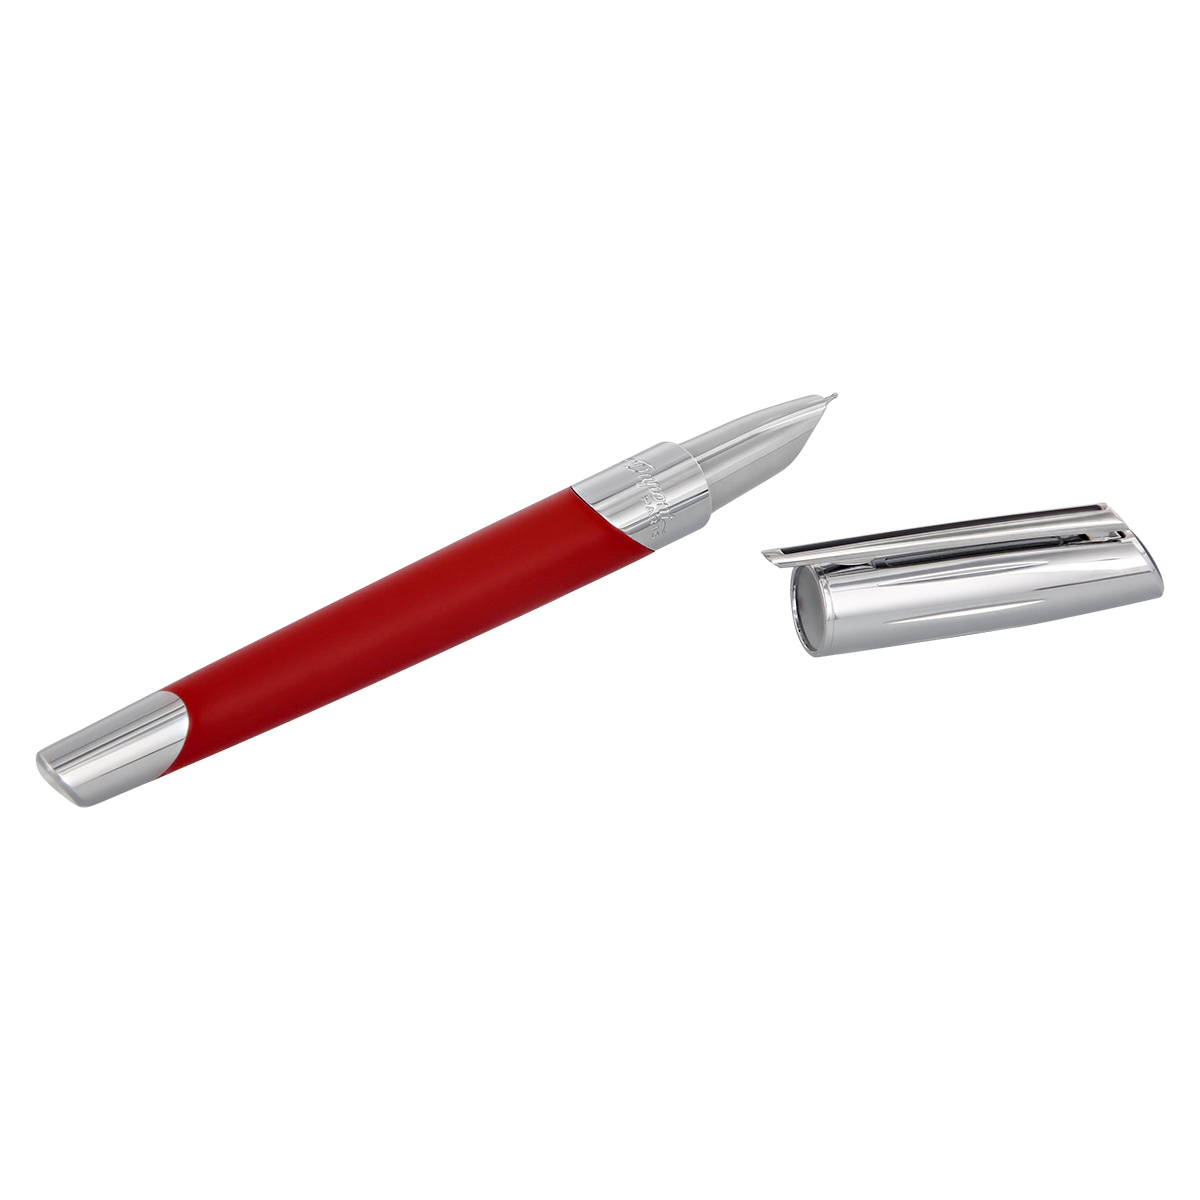 Перьевая ручка Defi Millenium 400739 Цвет Красный Отделка матовым лаком и хромом | S.T. Dupont